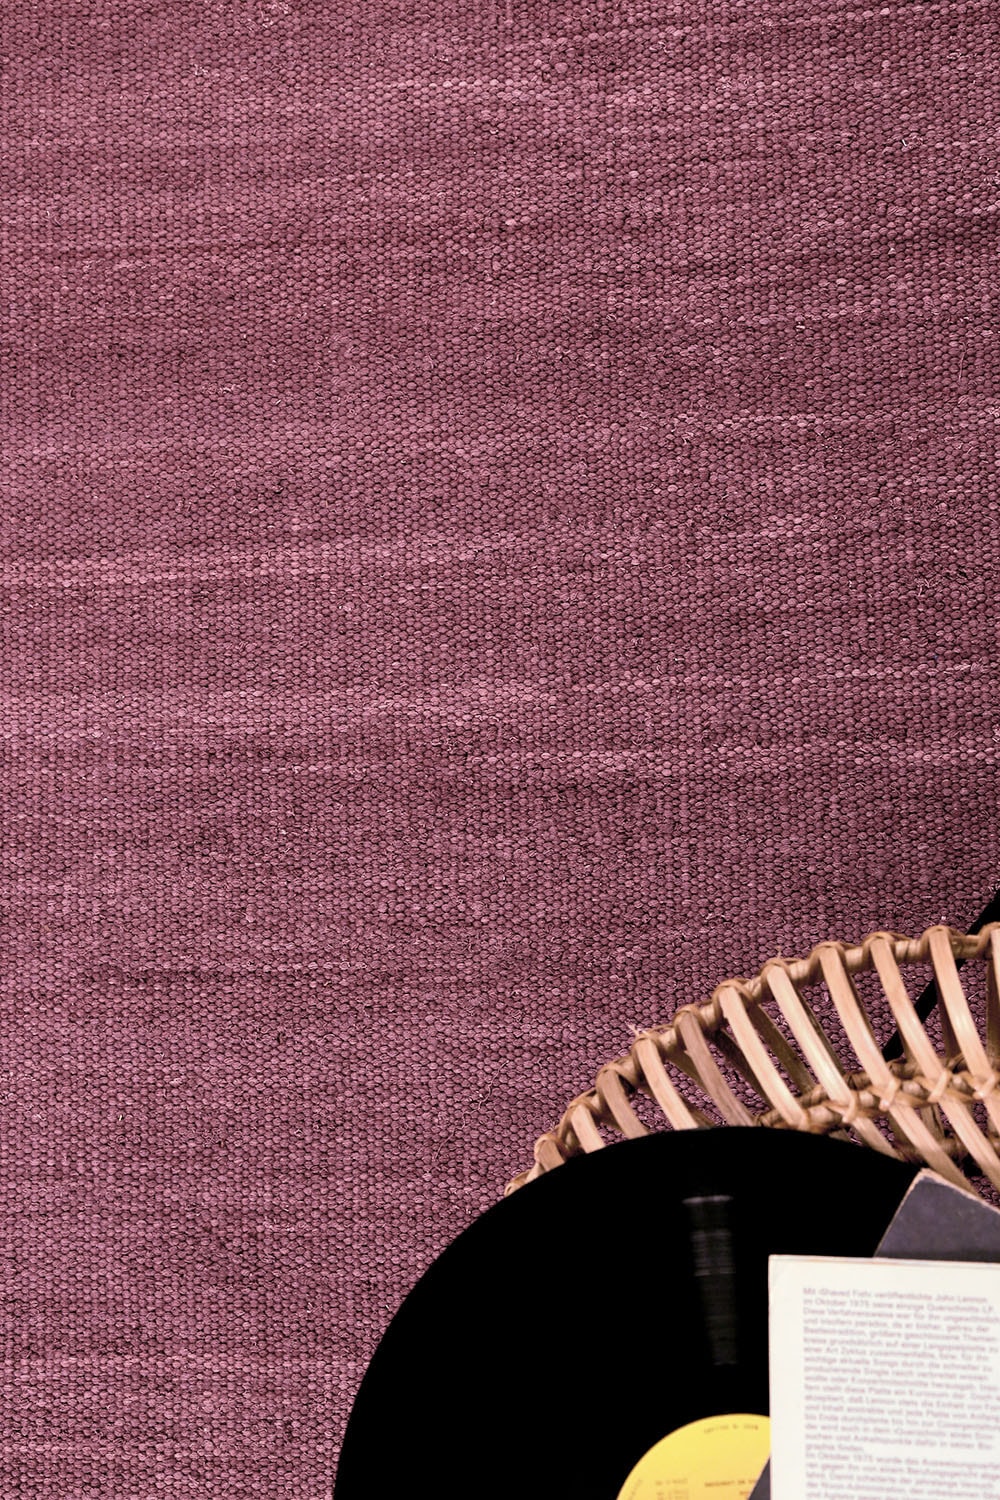 Esprit Teppich »Rainbow Kelim«, rechteckig, Flachgewebe aus 100% Baumwolle,  Wohnzimmer, Kinderzimmer, einfarbig günstig kaufen